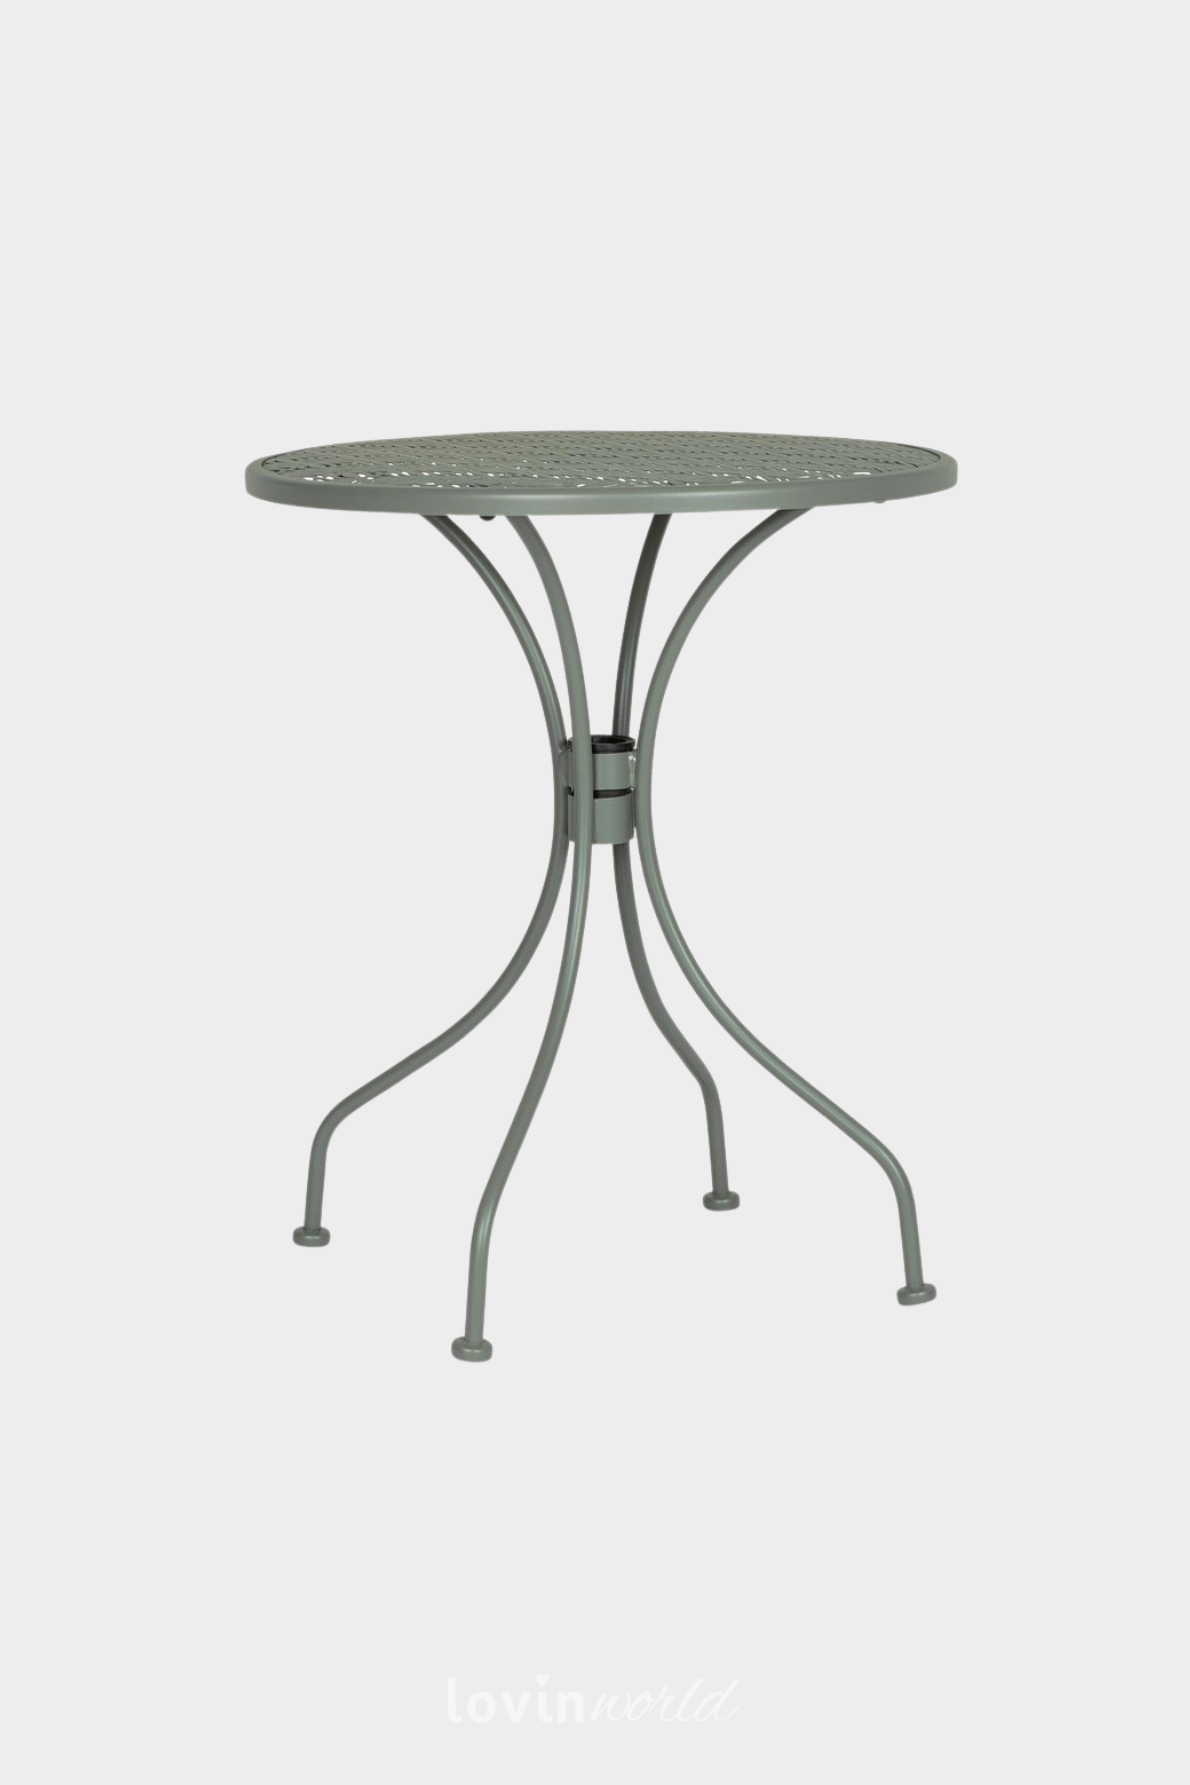 Tavolino da esterno Lizette Ø60 cm. in acciaio, colore verde scuro-1